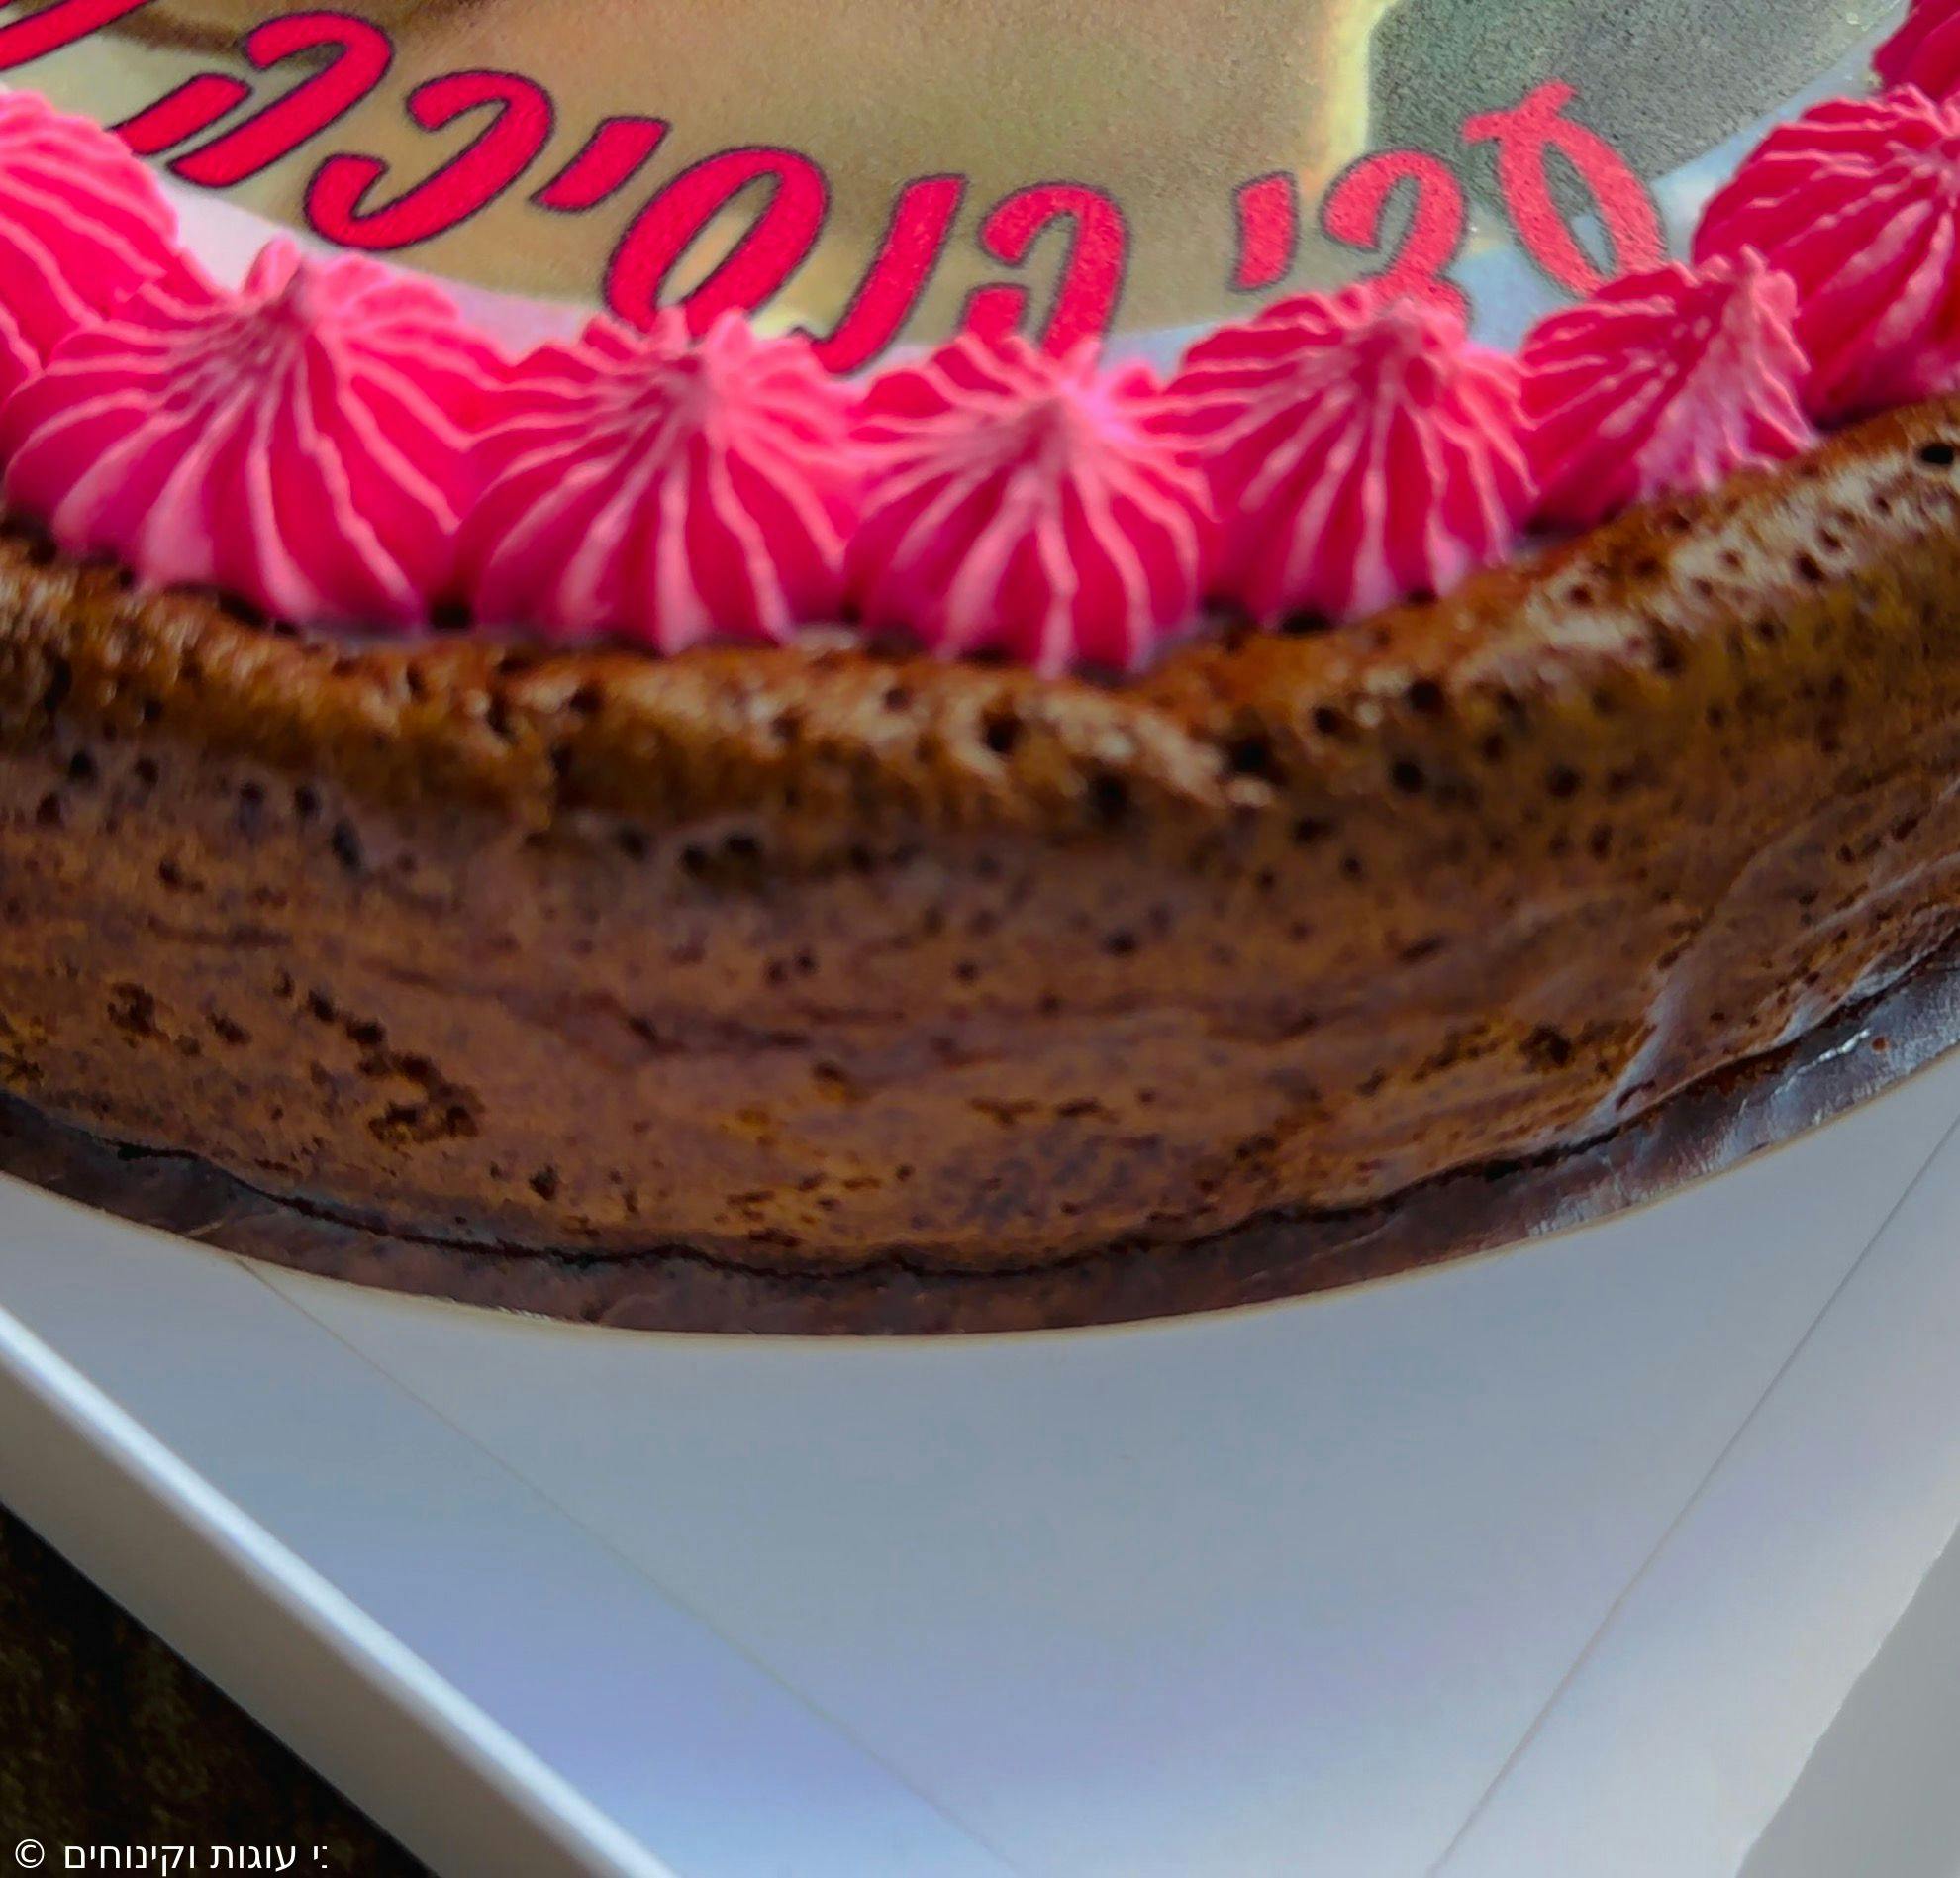 עוגת פאדג׳ - עם גנאש שוקולד בלגי
דף סוכר בעיצוב אישי
וזילוף קרם